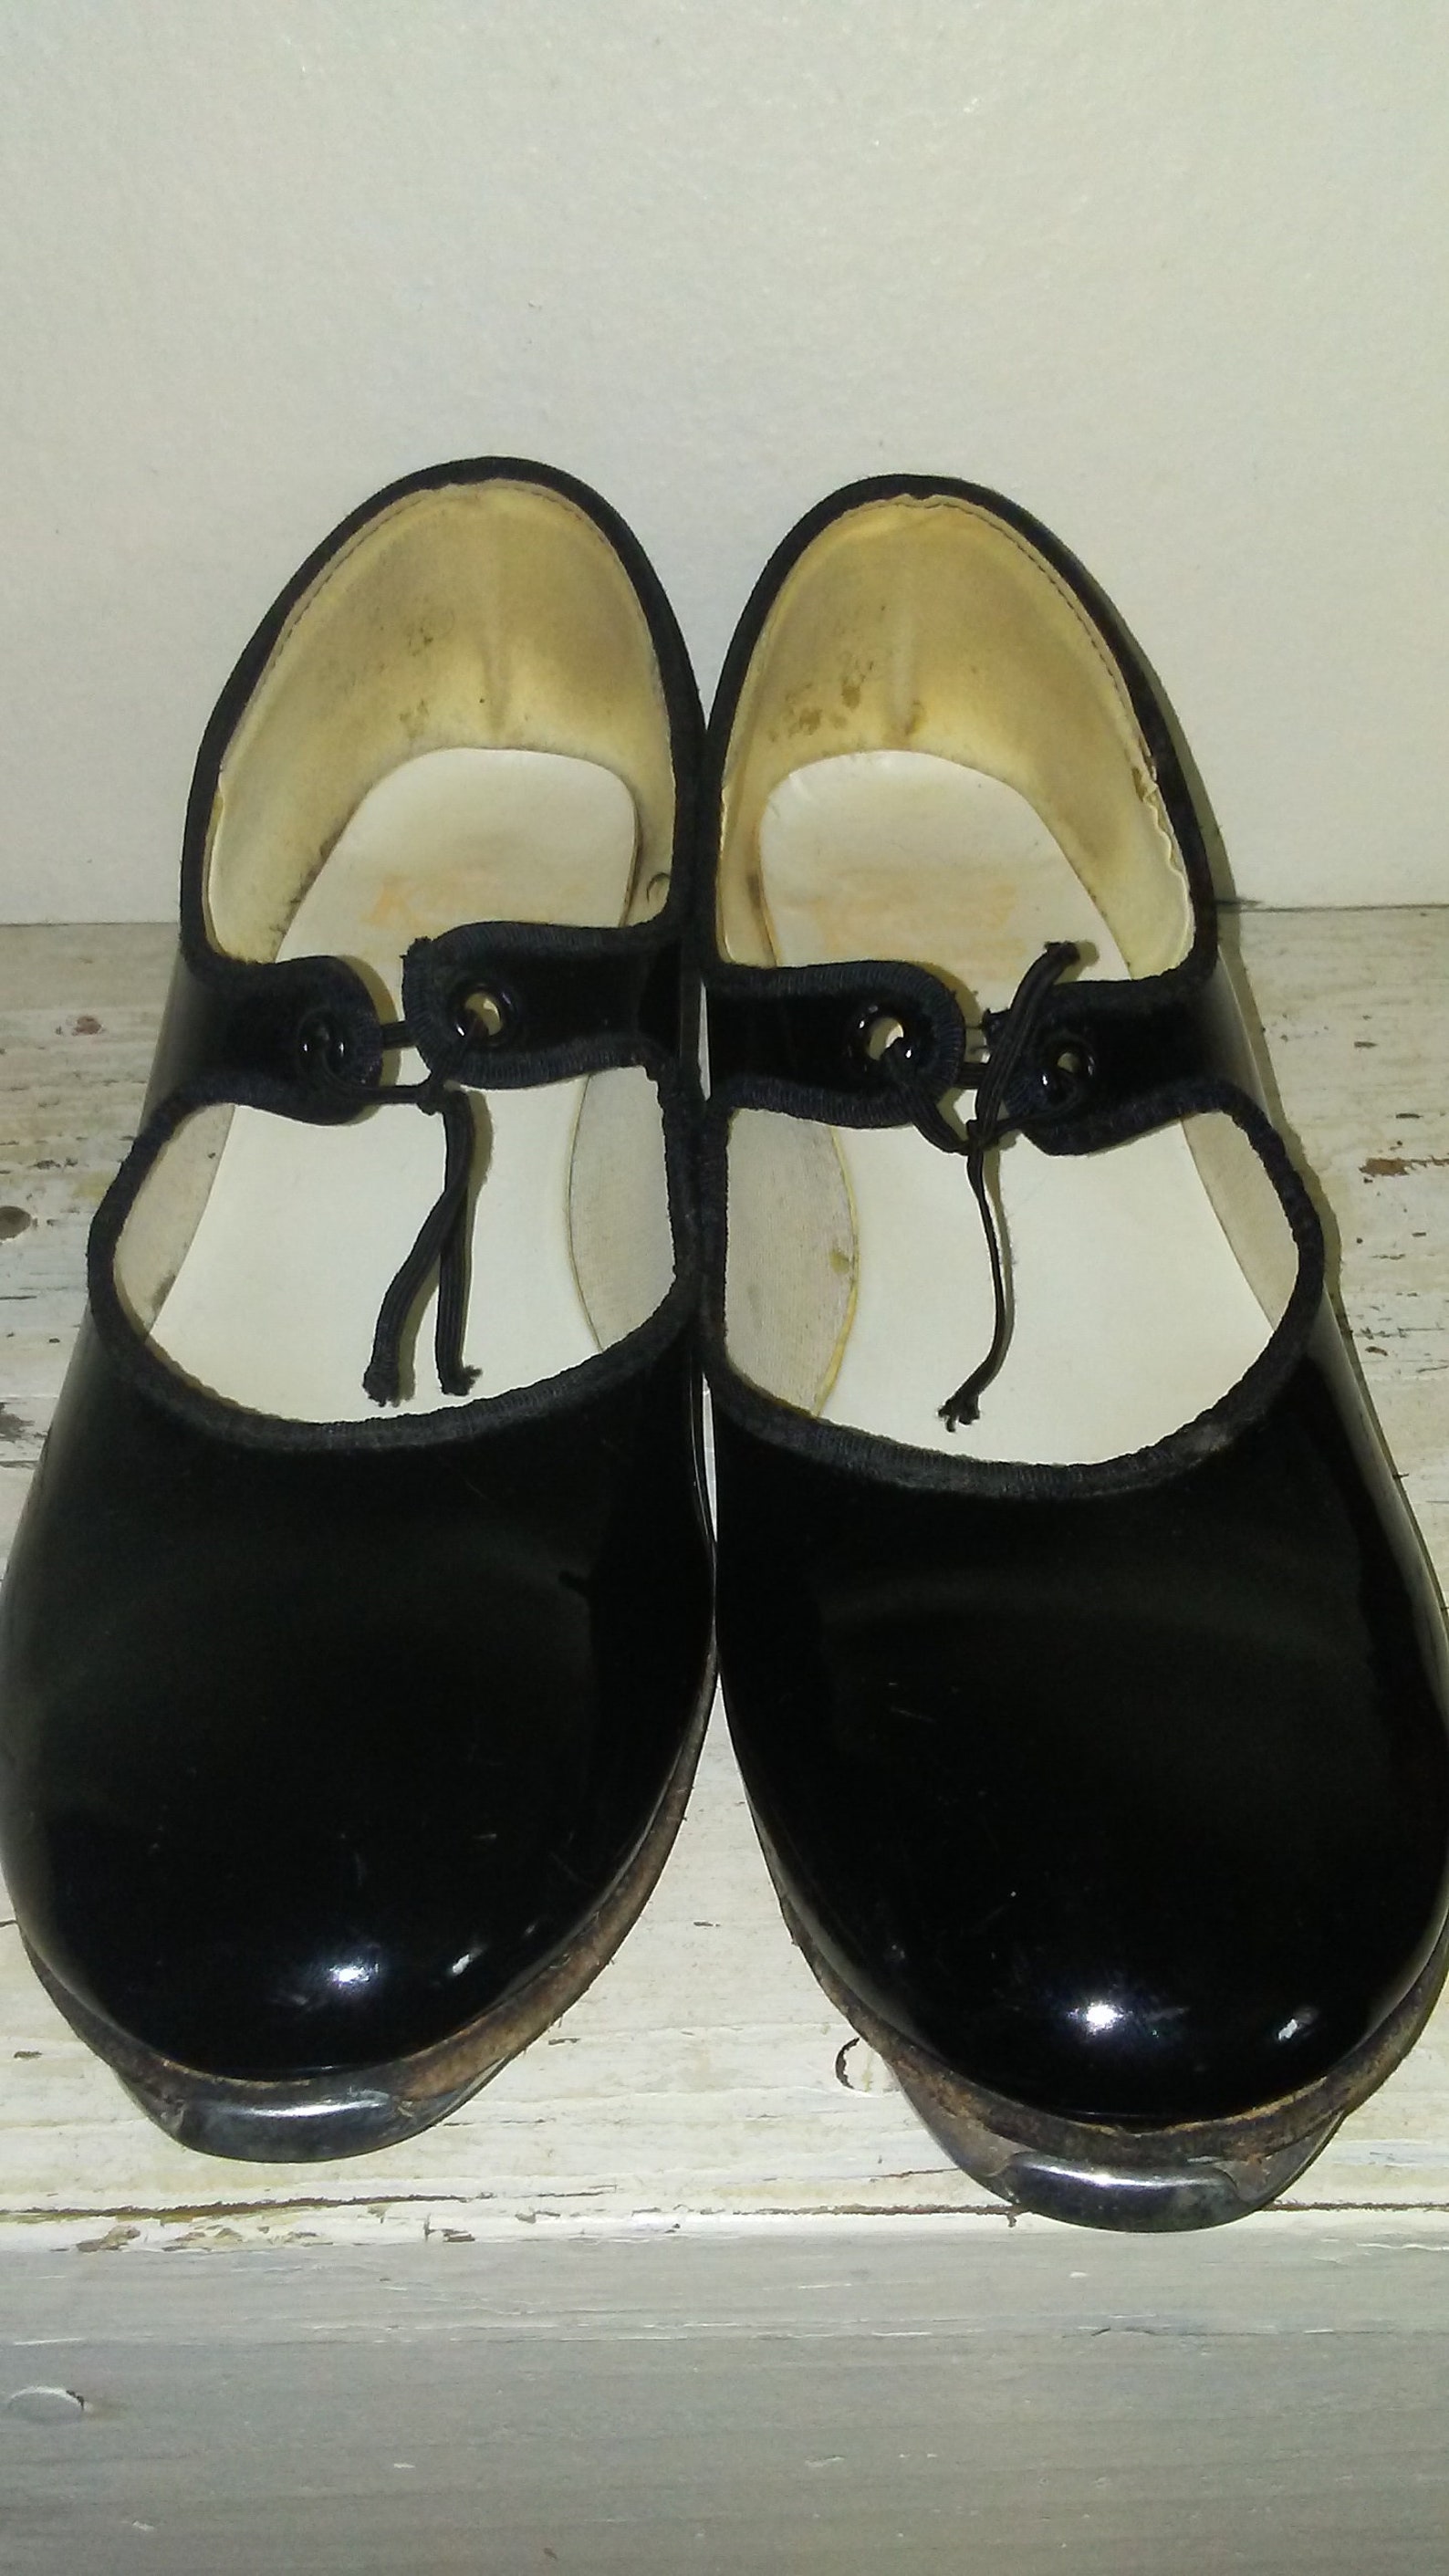 Vintage Tap Shoes Girls Tap Shoes Vintage Shoes Dance Shoes - Etsy